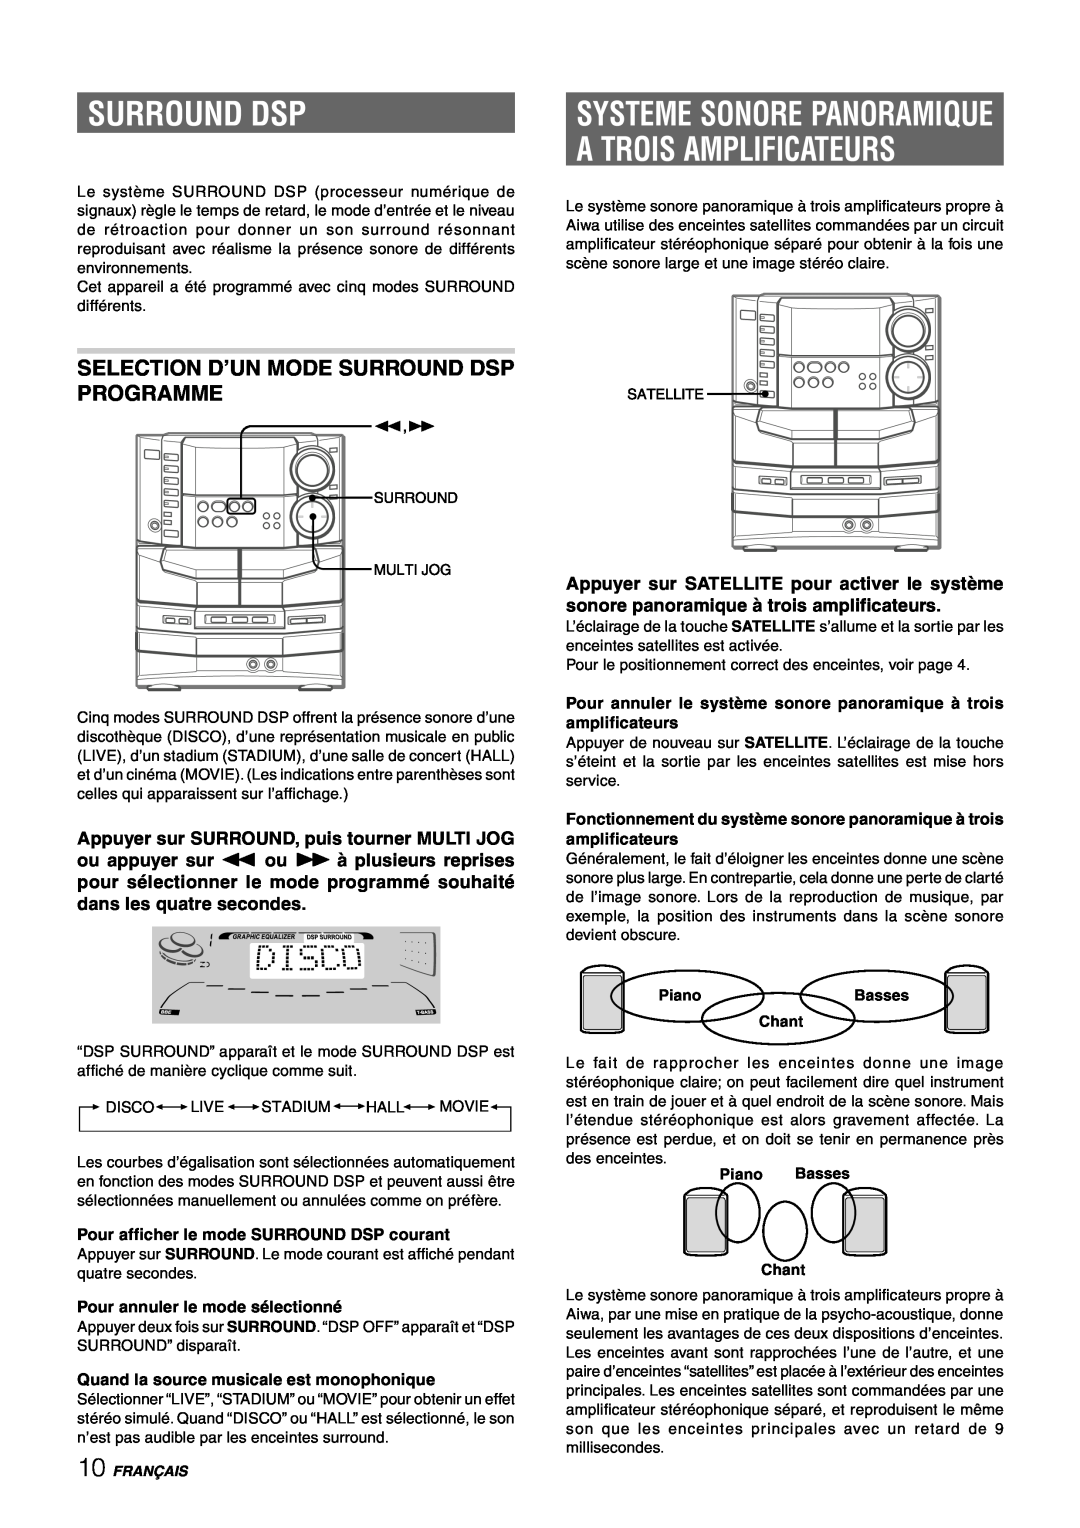 Sony NSX-AJ80 manual A Trois Amplificateurs, Systeme Sonore Panoramique, Selection D’Un Mode Surround Dsp Programme 